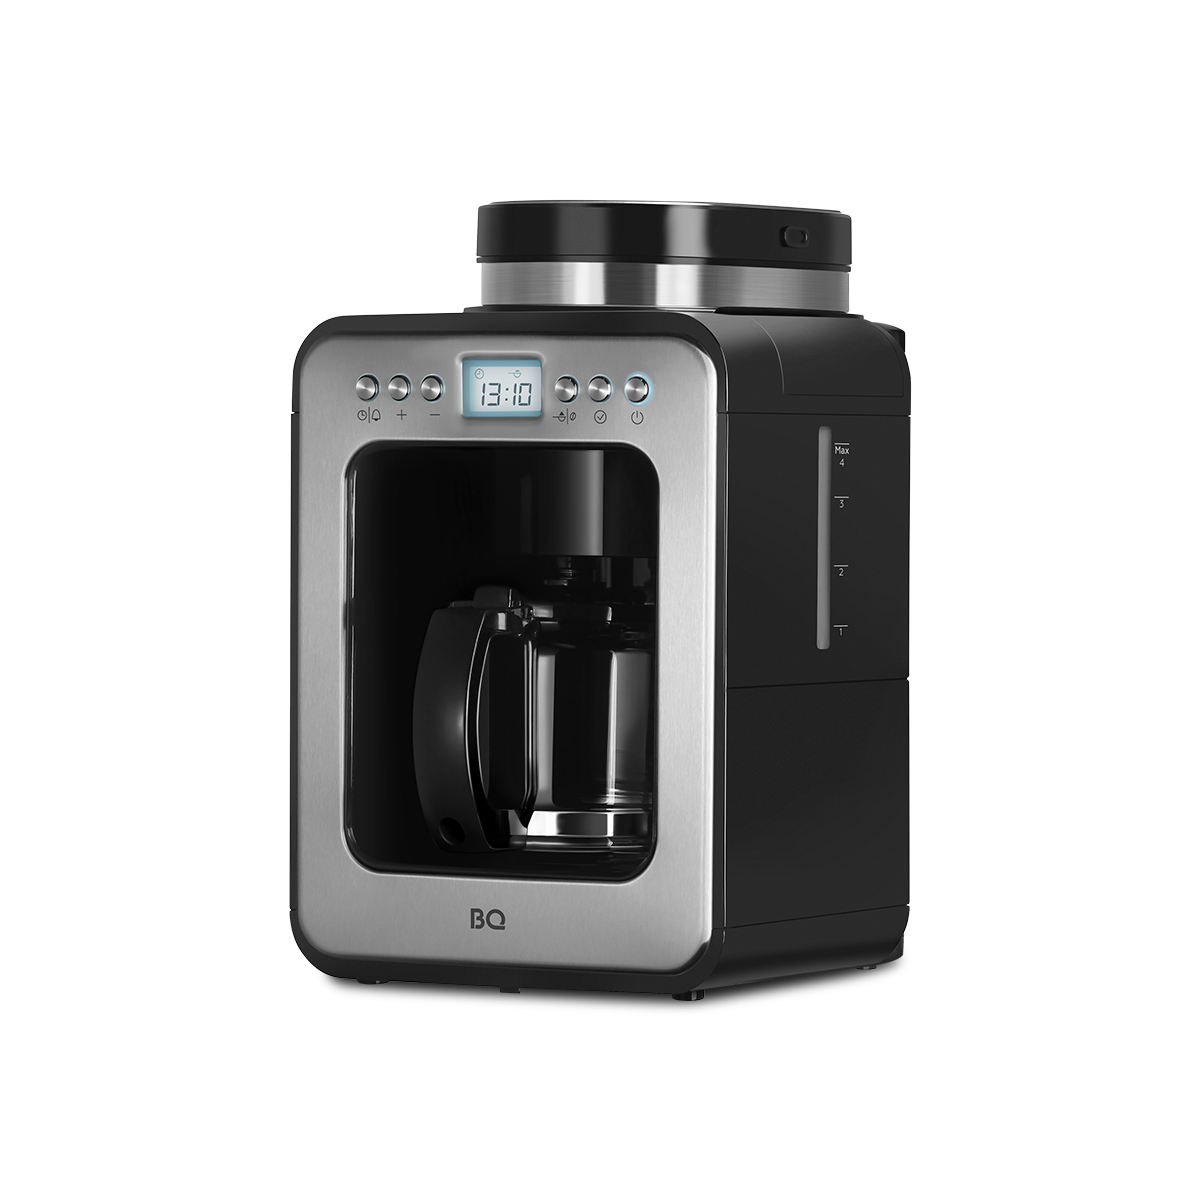 Кофеварка капельного типа BQ CM7001 серебристый, черный кофеварка капельного типа krups grind aroma km832810 с кофемолкой серебристый